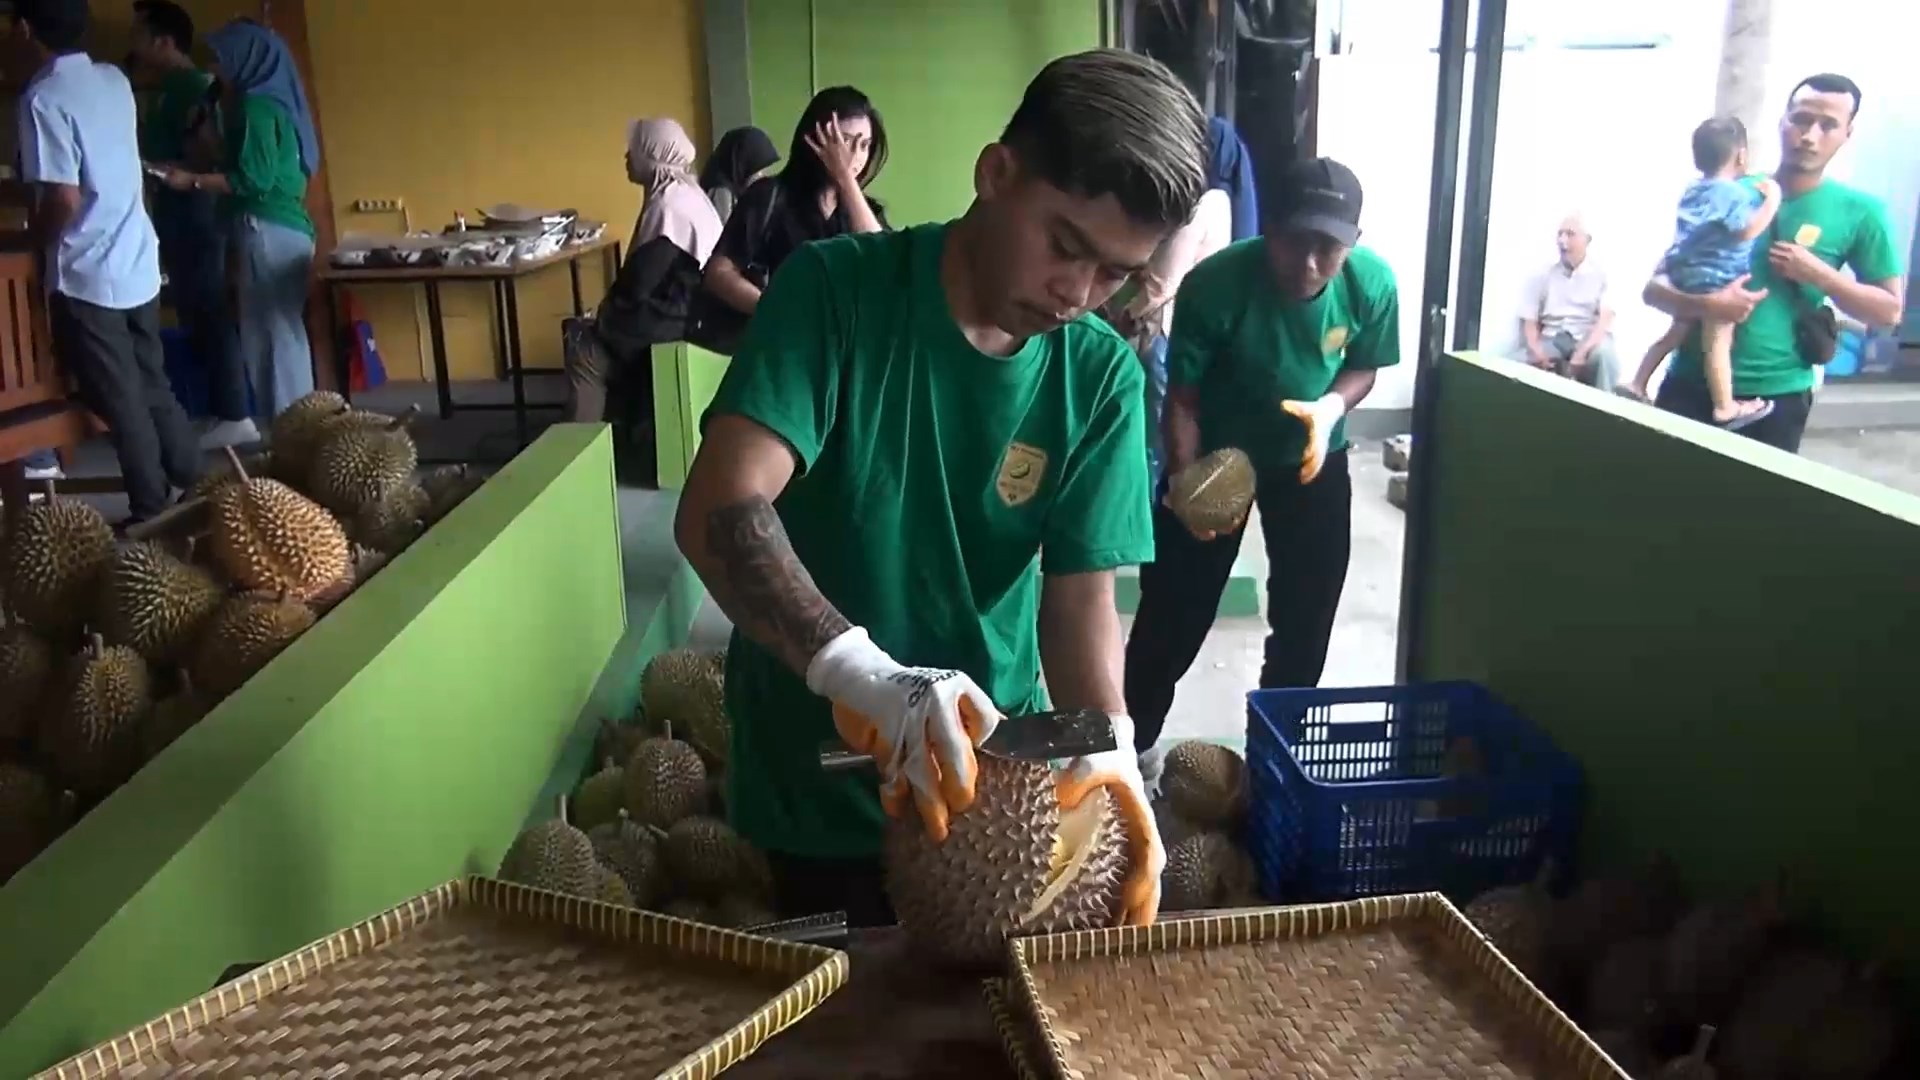 Durijo sendiri sengaja hadir untuk memanjakan para pecinta durian dan buah lokal Jogja serta sebagai usaha meningkatkan kesejahteraan petani